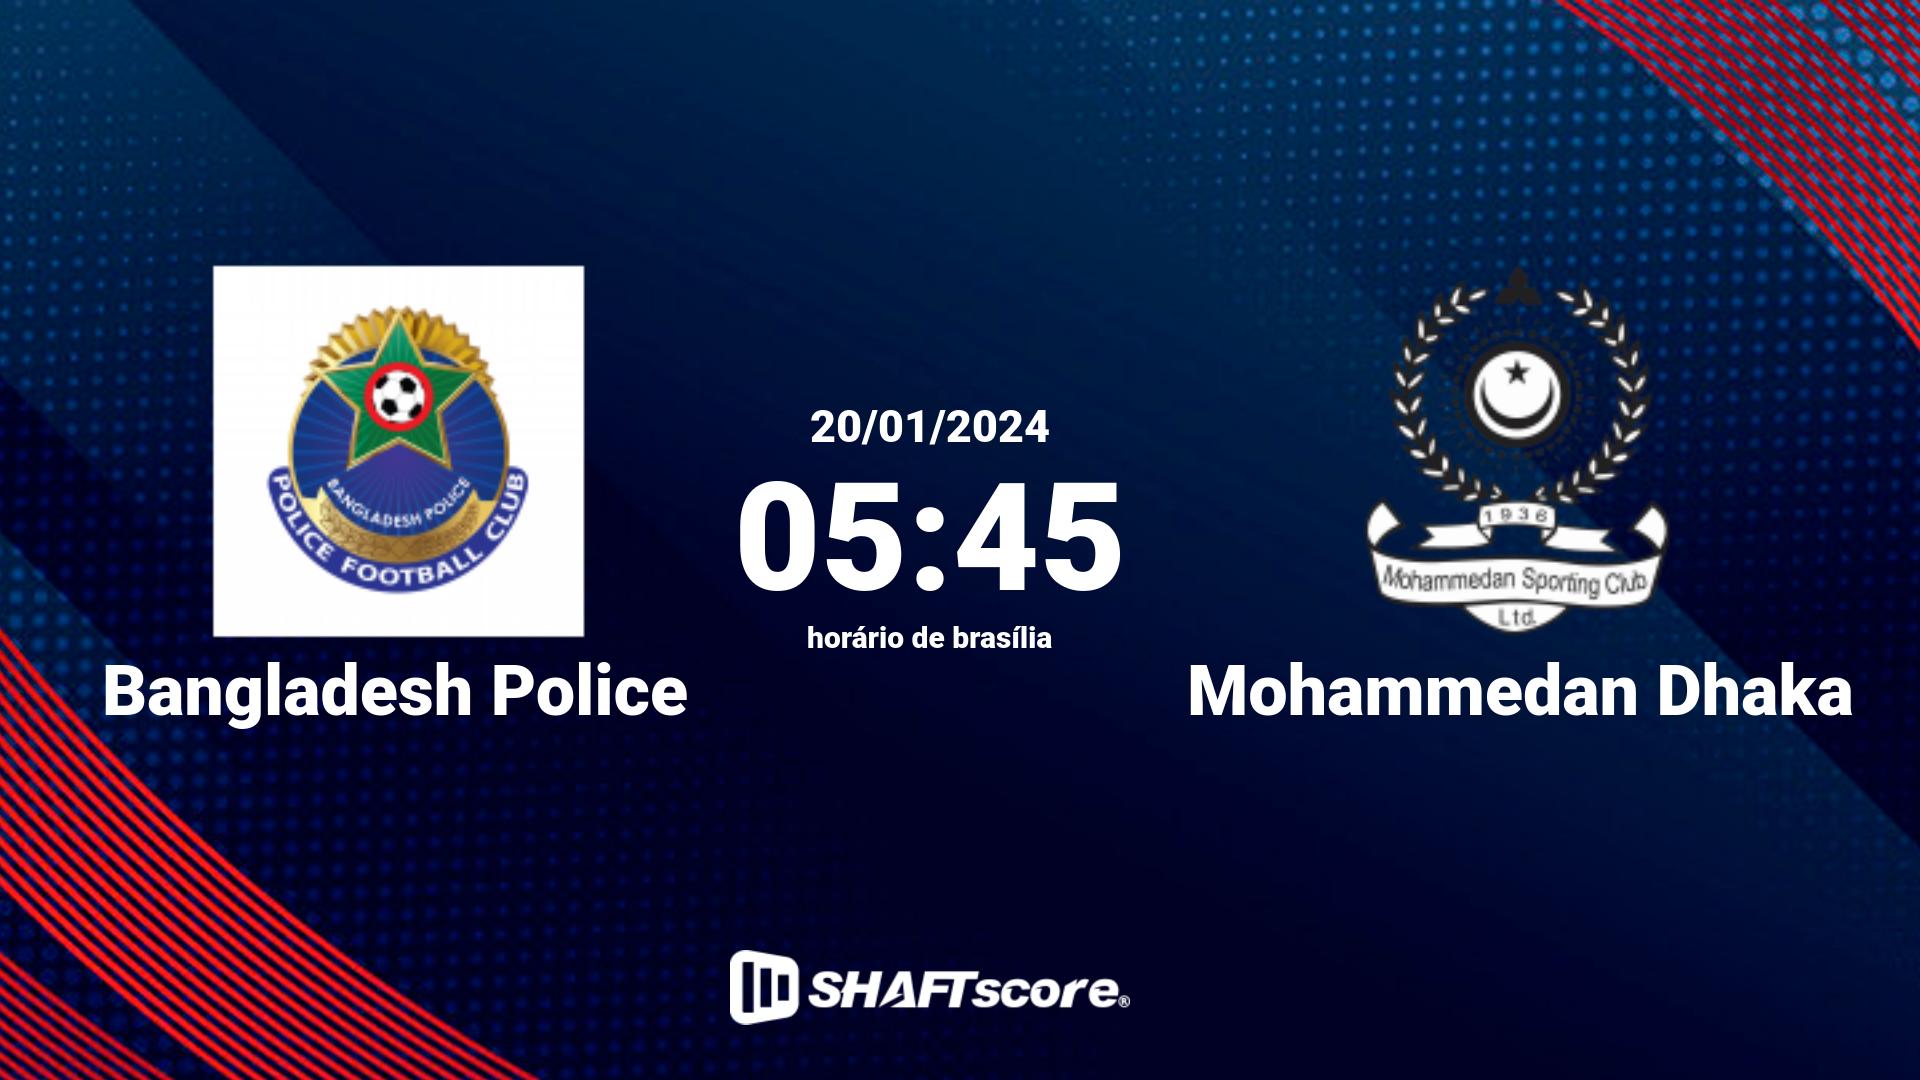 Estatísticas do jogo Bangladesh Police vs Mohammedan Dhaka 20.01 05:45